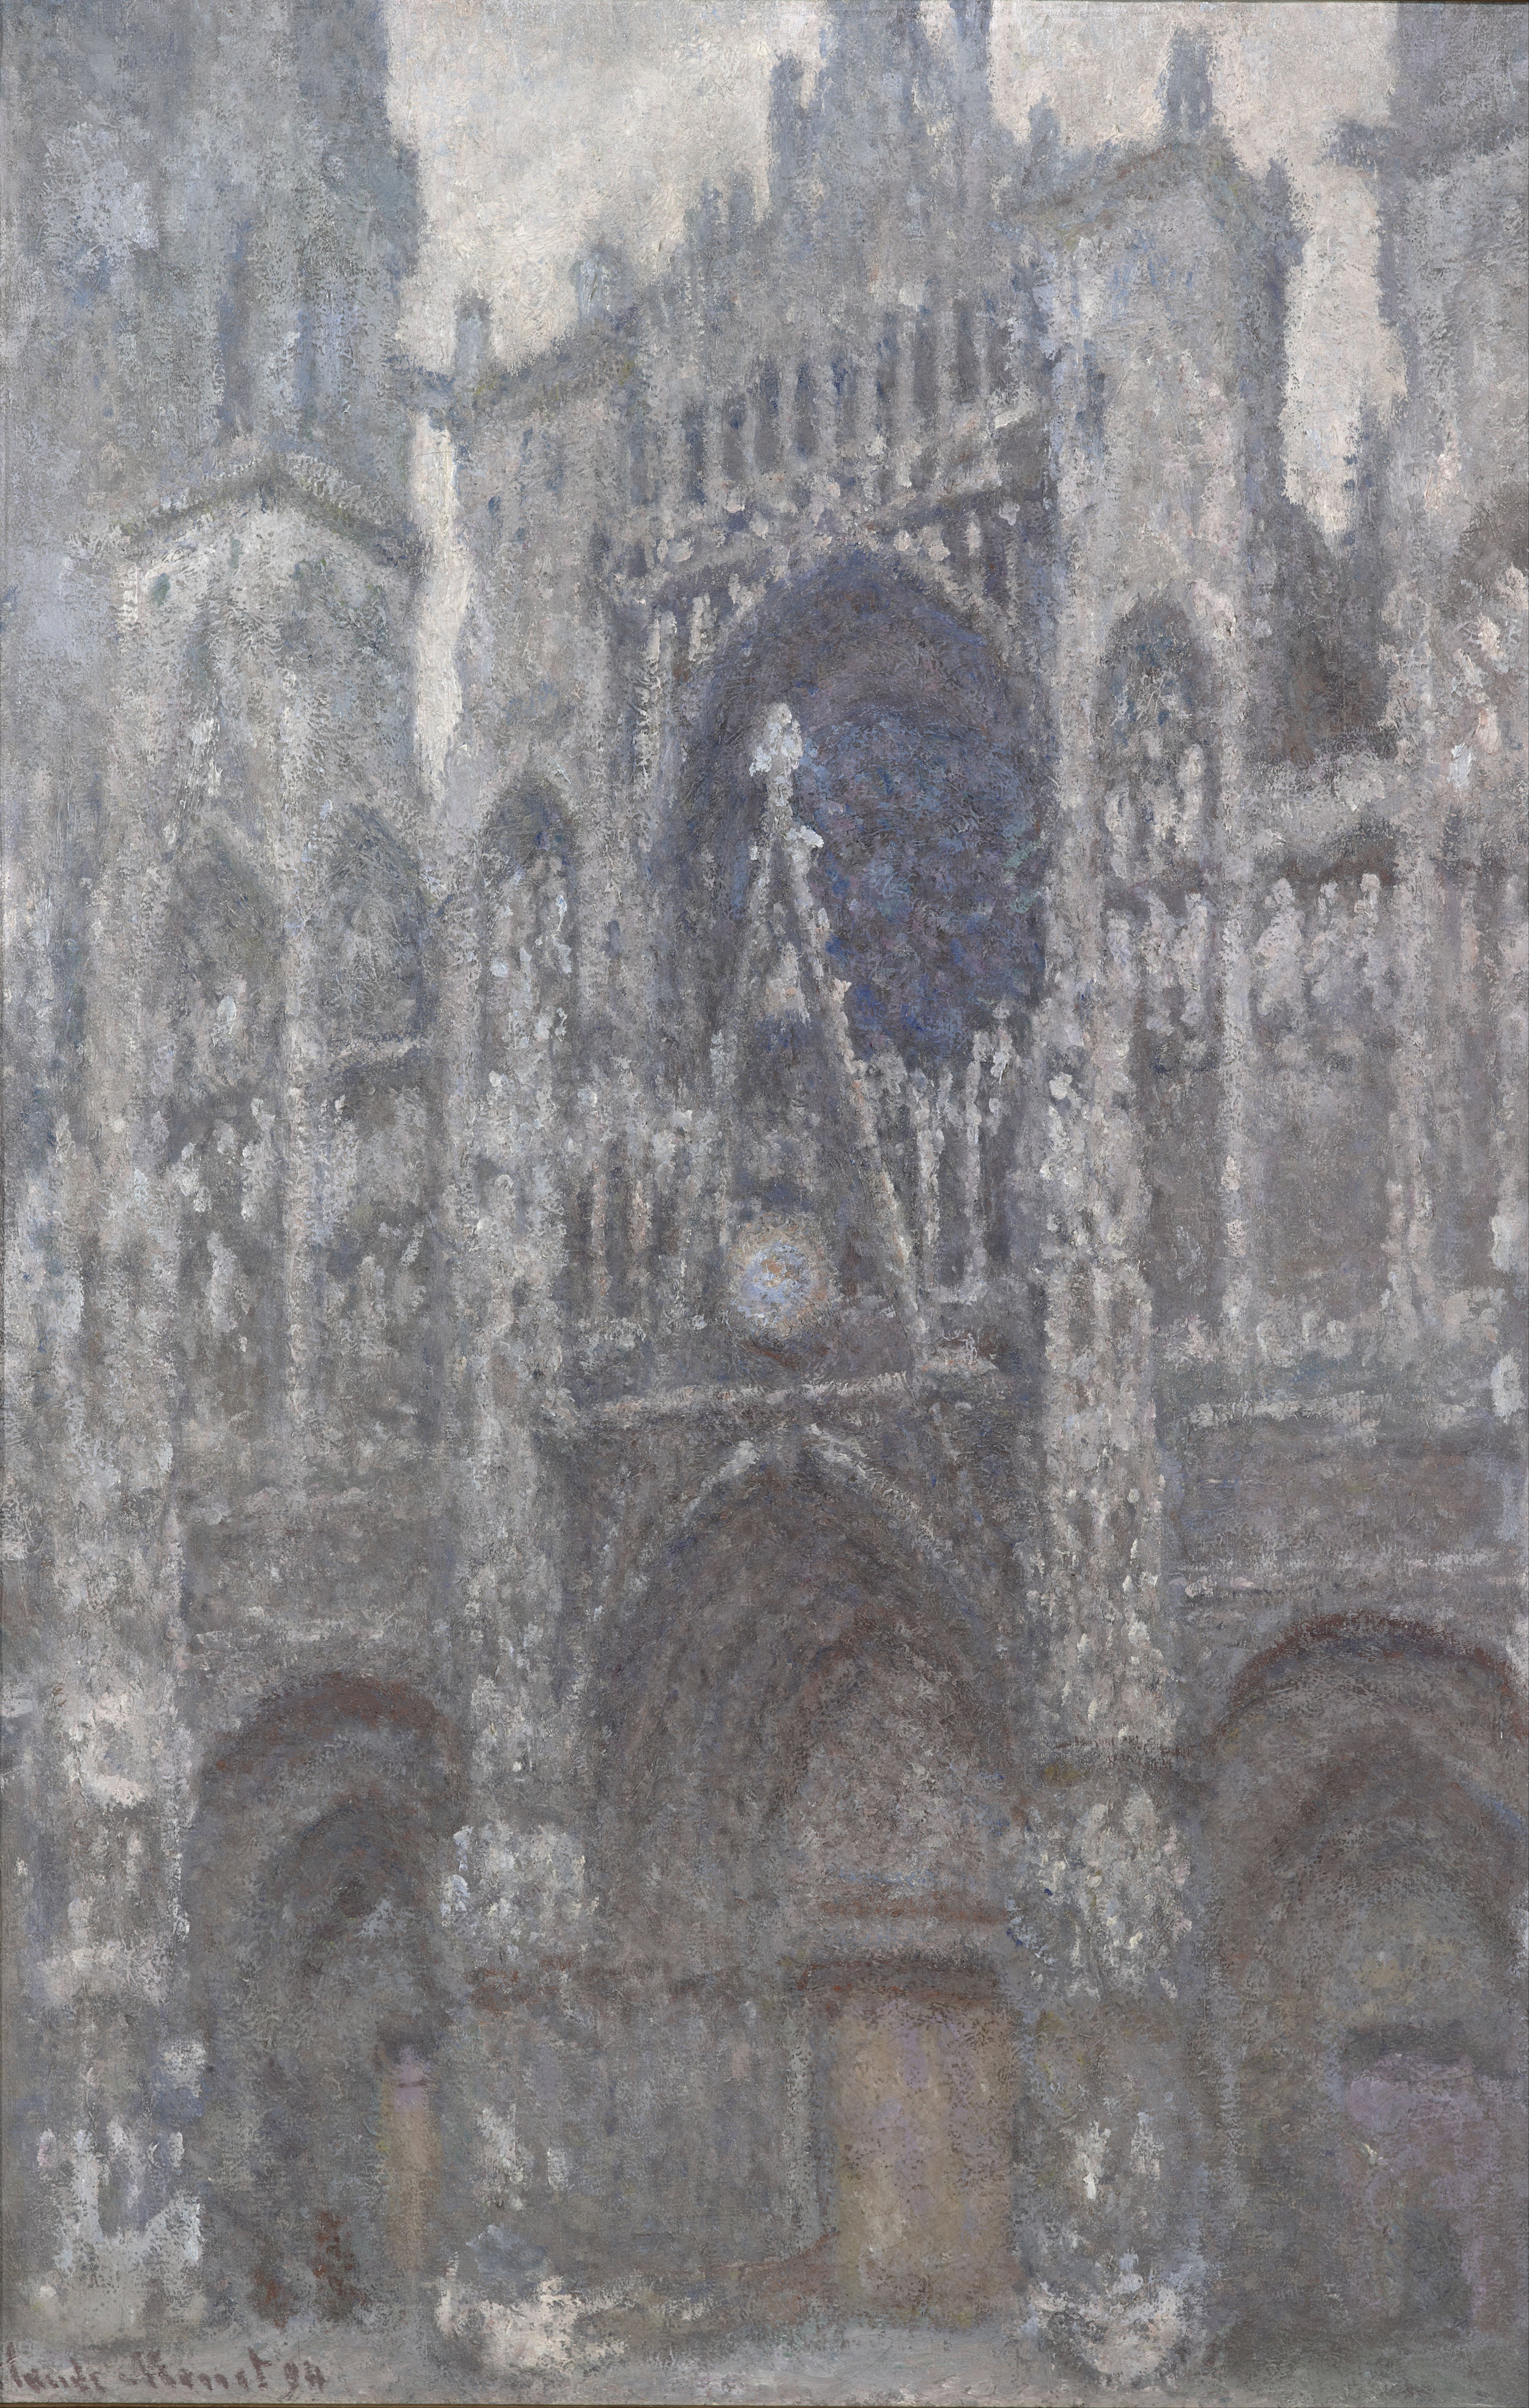 La Catedral de Ruan. El portal, tiempo gris by Claude Monet - 1892 - 65 x 100 cm Musée d'Orsay